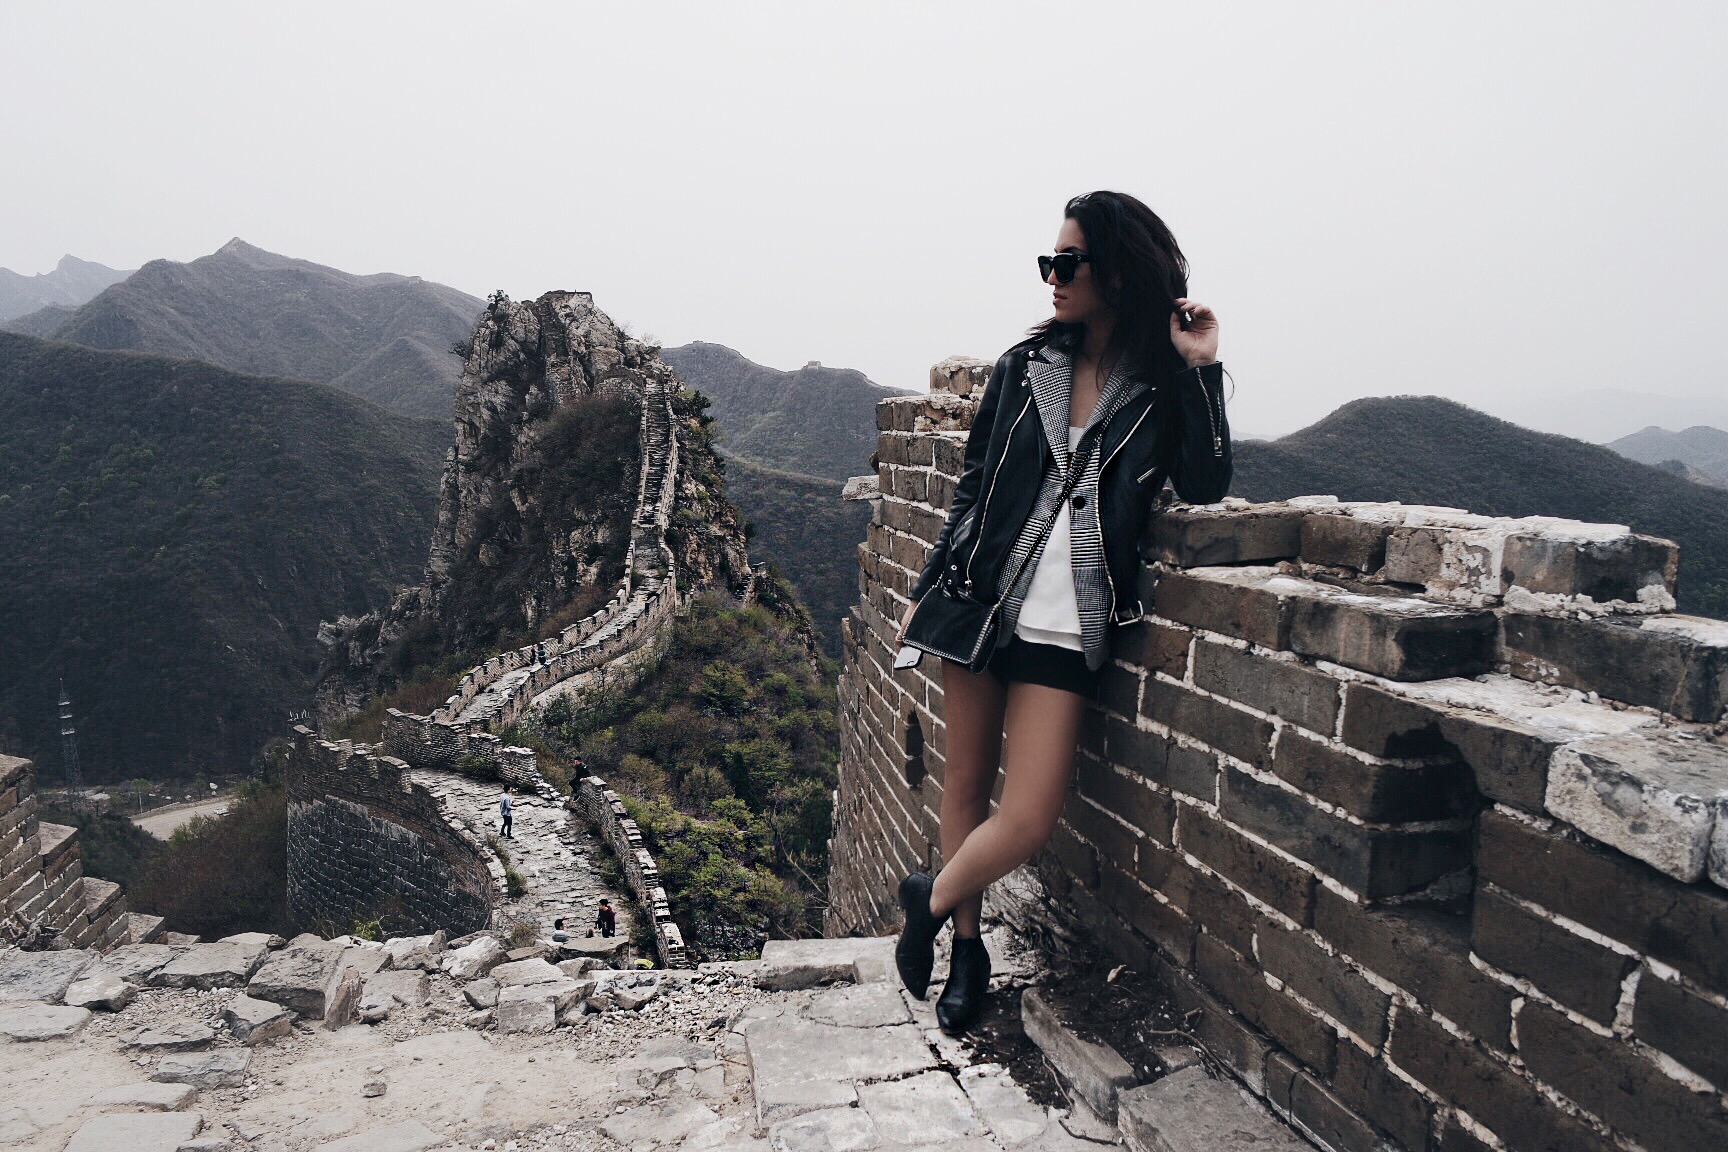 LA blogger Tania Sarin in China at the Great wall of china